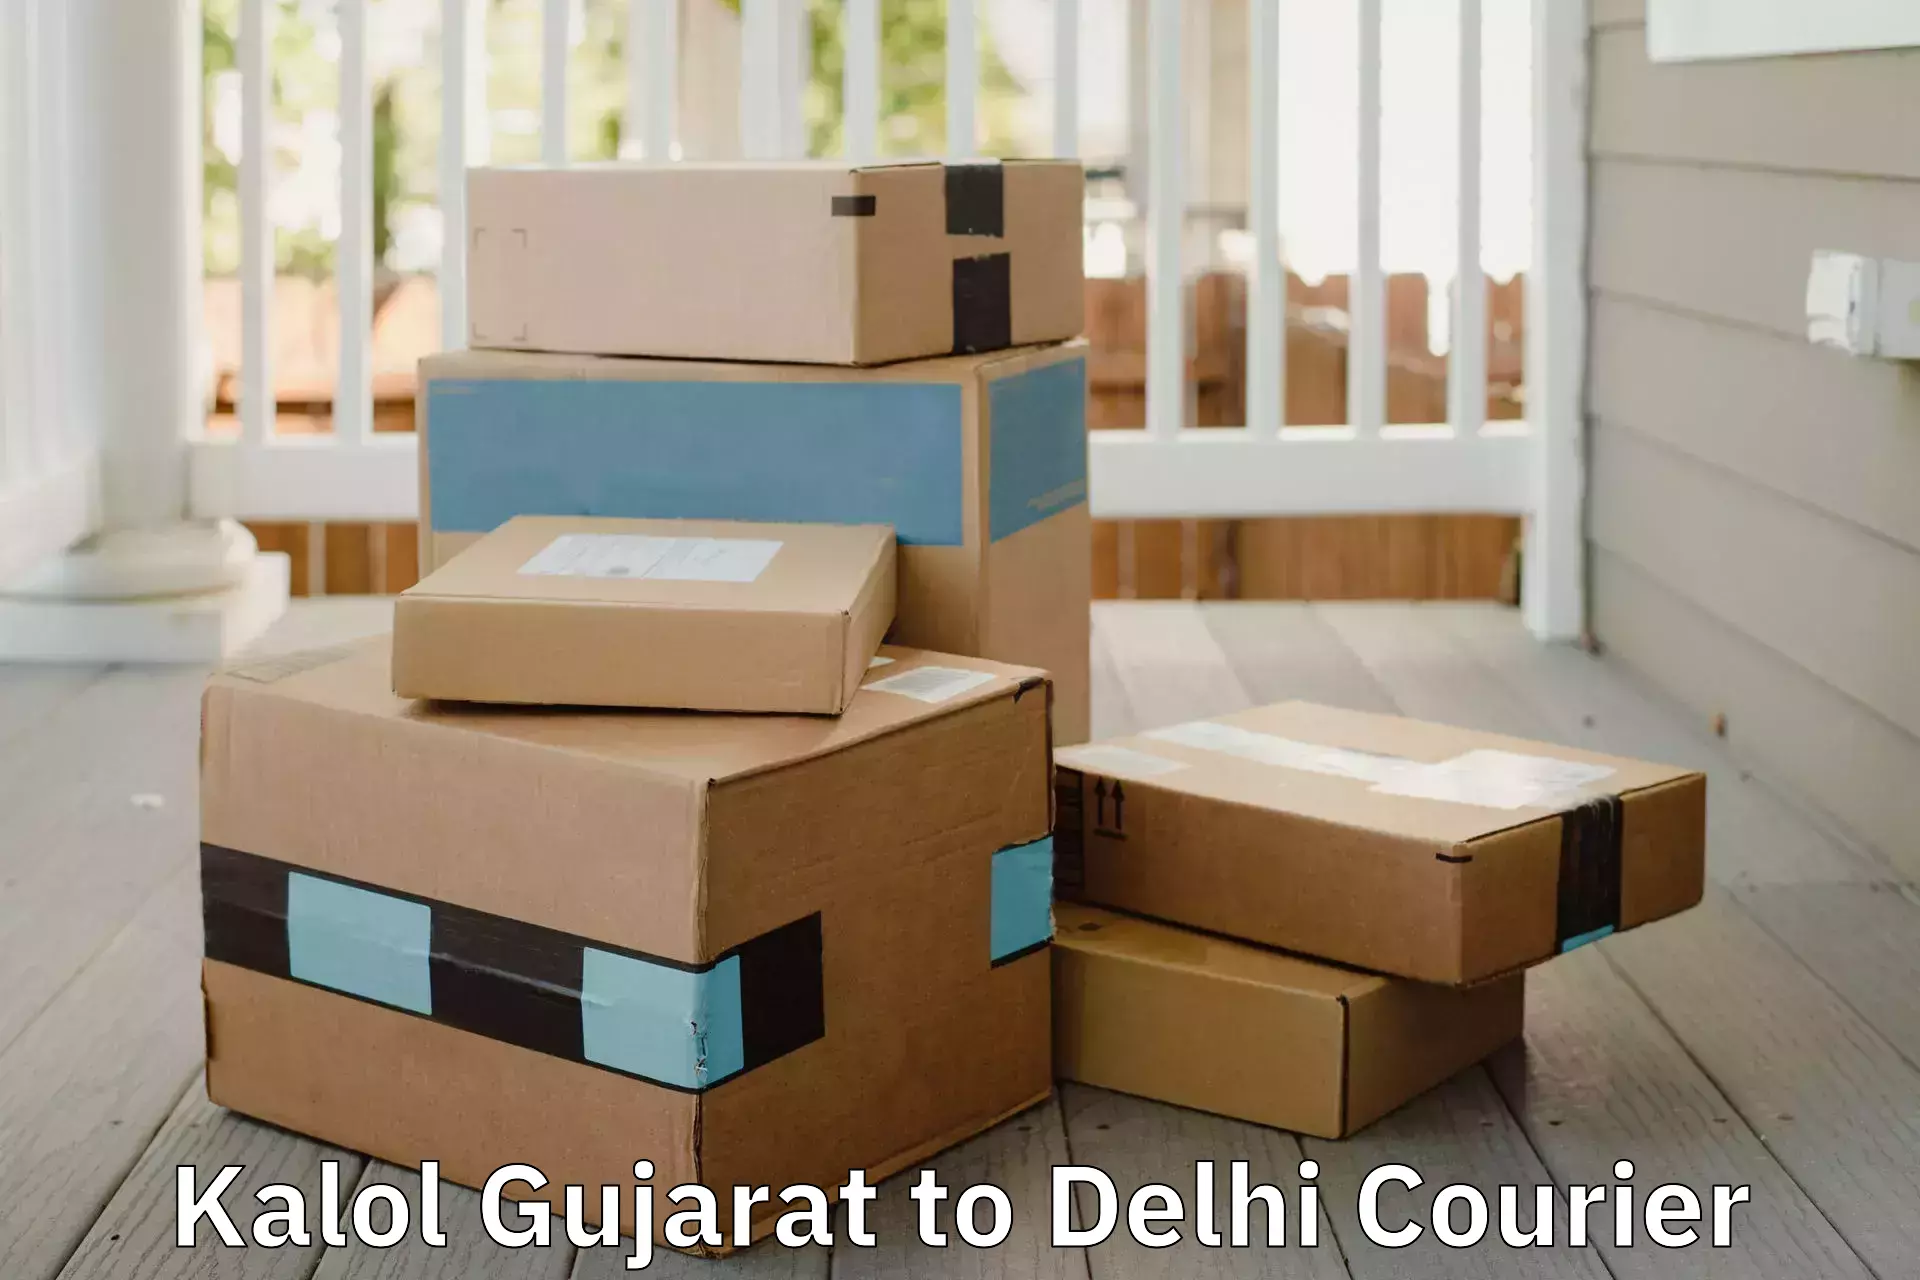 Furniture moving service Kalol Gujarat to Krishna Nagar